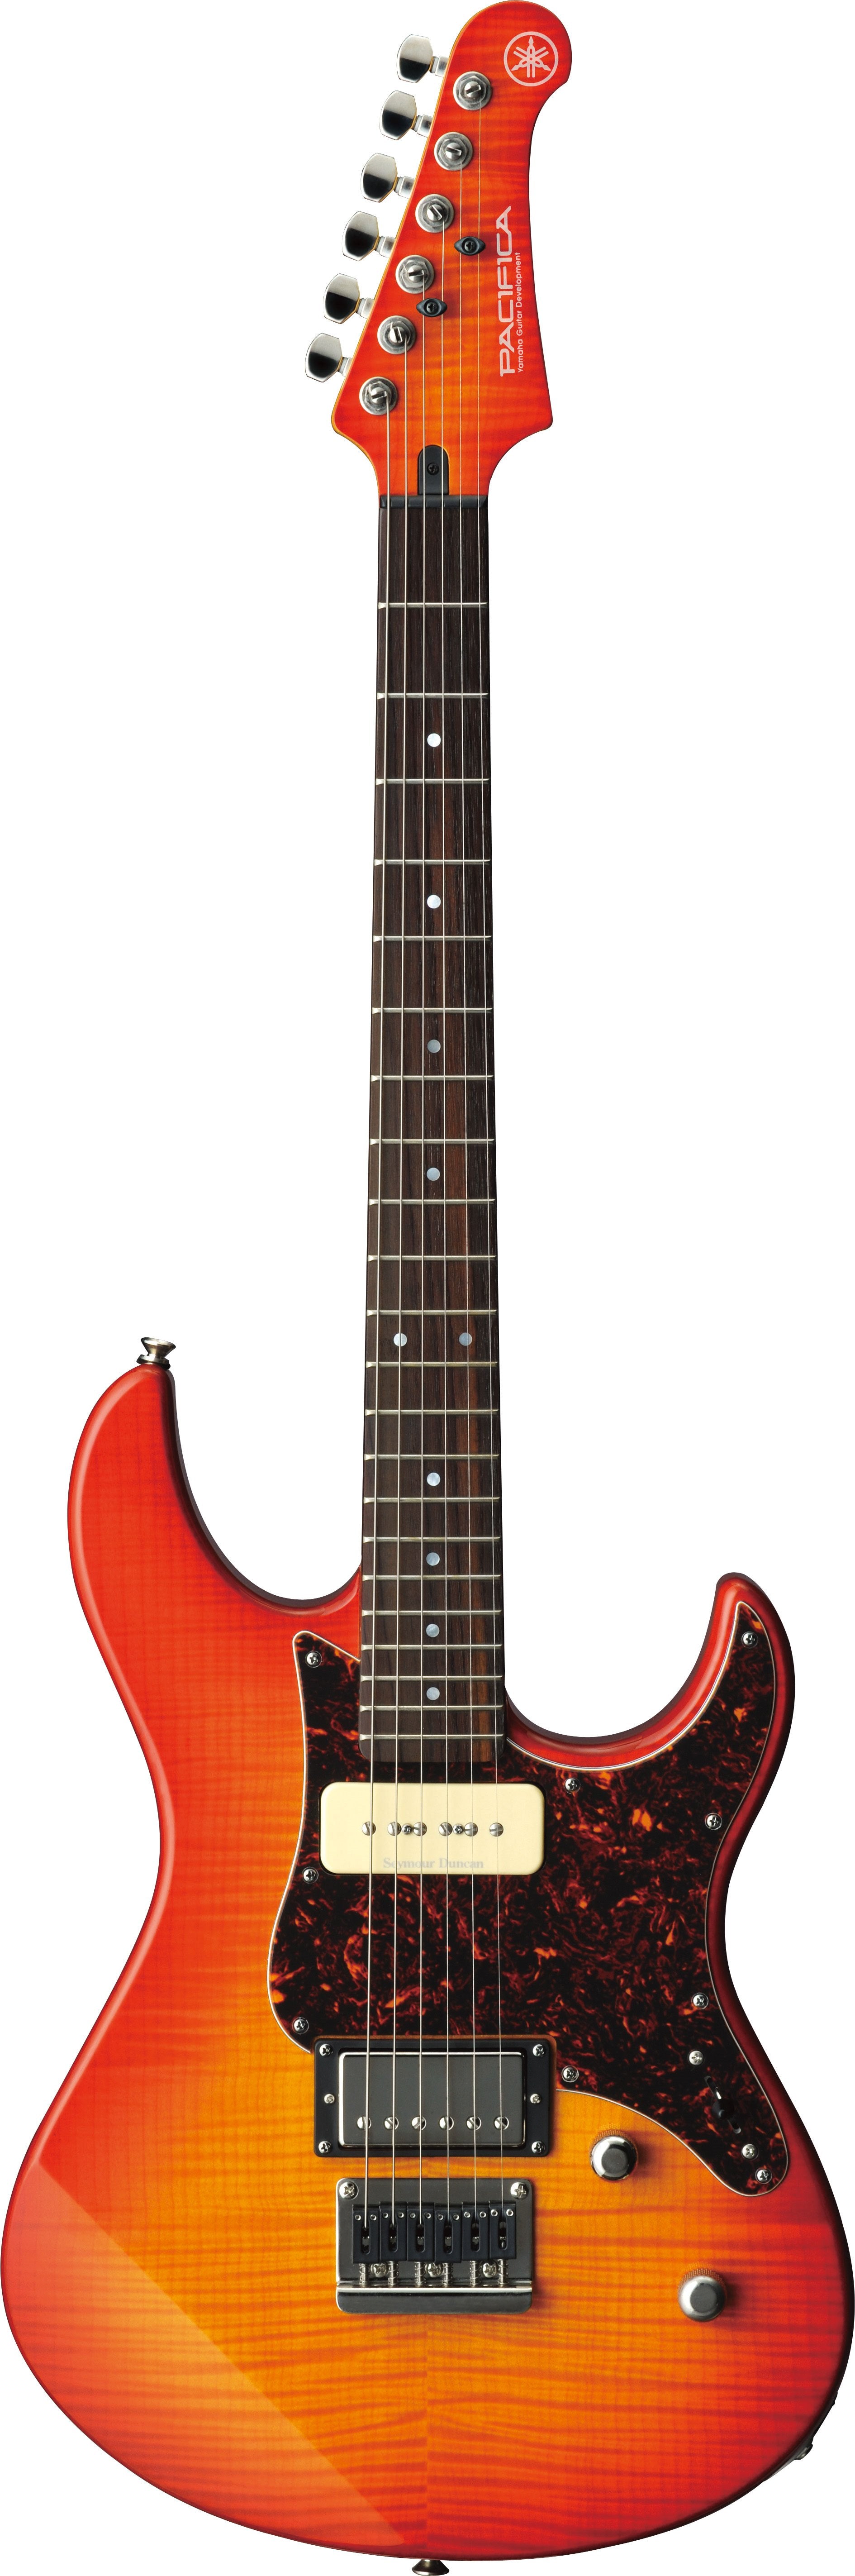 Yamaha Pacifica 611HFM Electric Guitar - Light Amber Burst